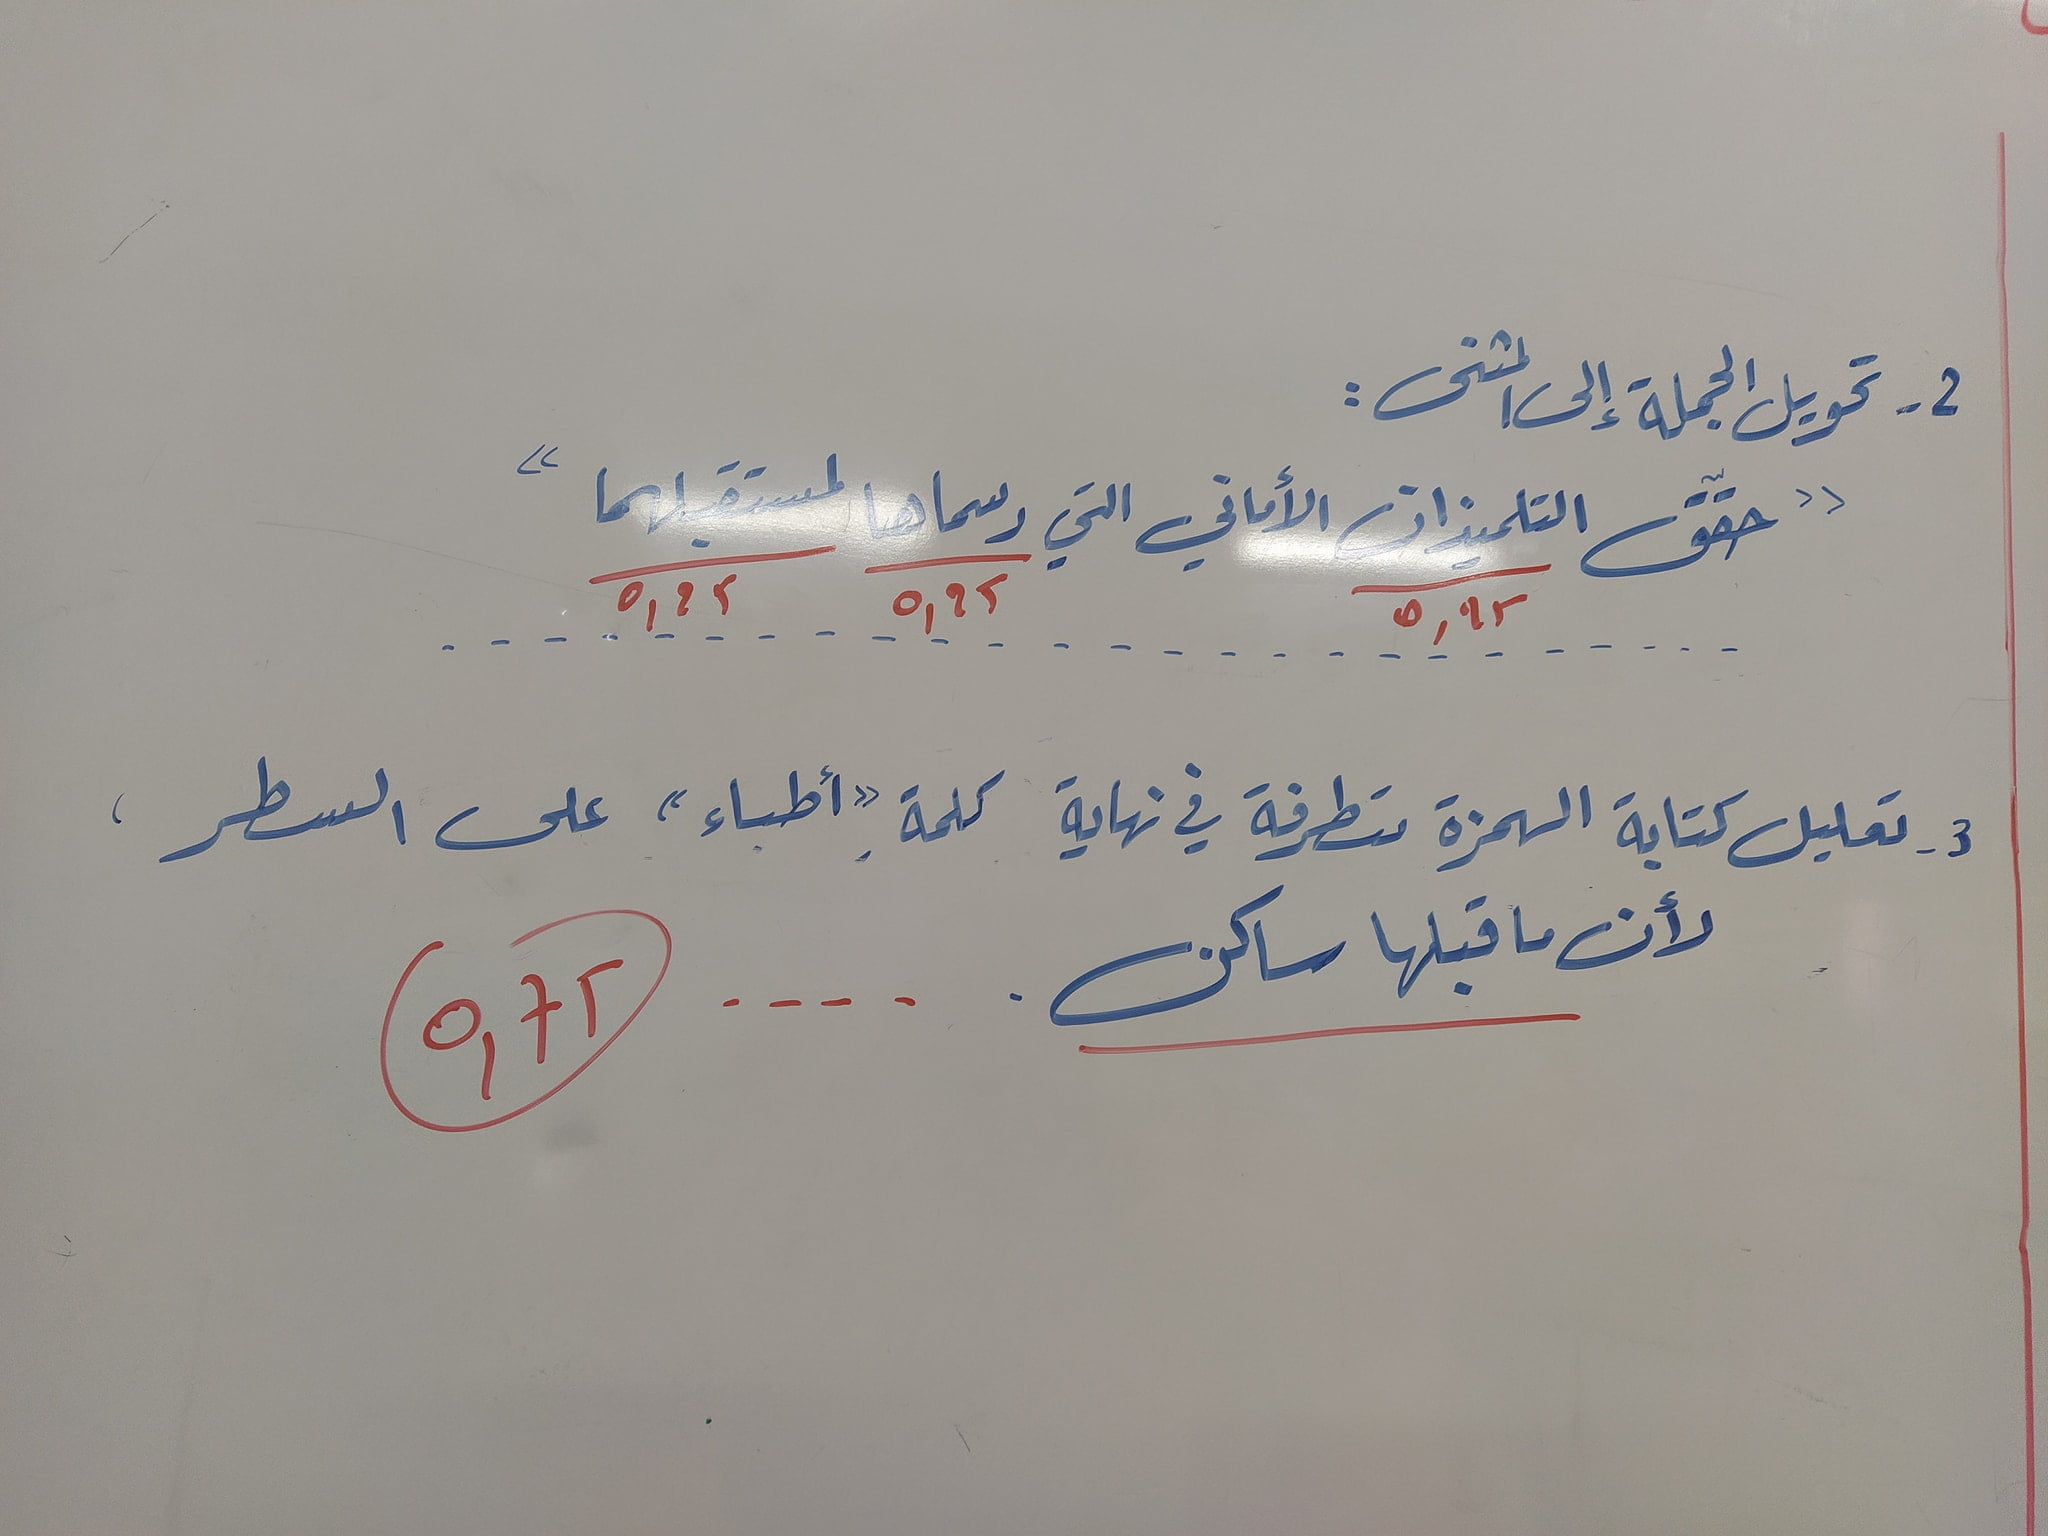 تصحيح امتحان شهادة نهاية مرحلة التعليم الابتدائي التصحيح النموذجي: اللغة العربية 17